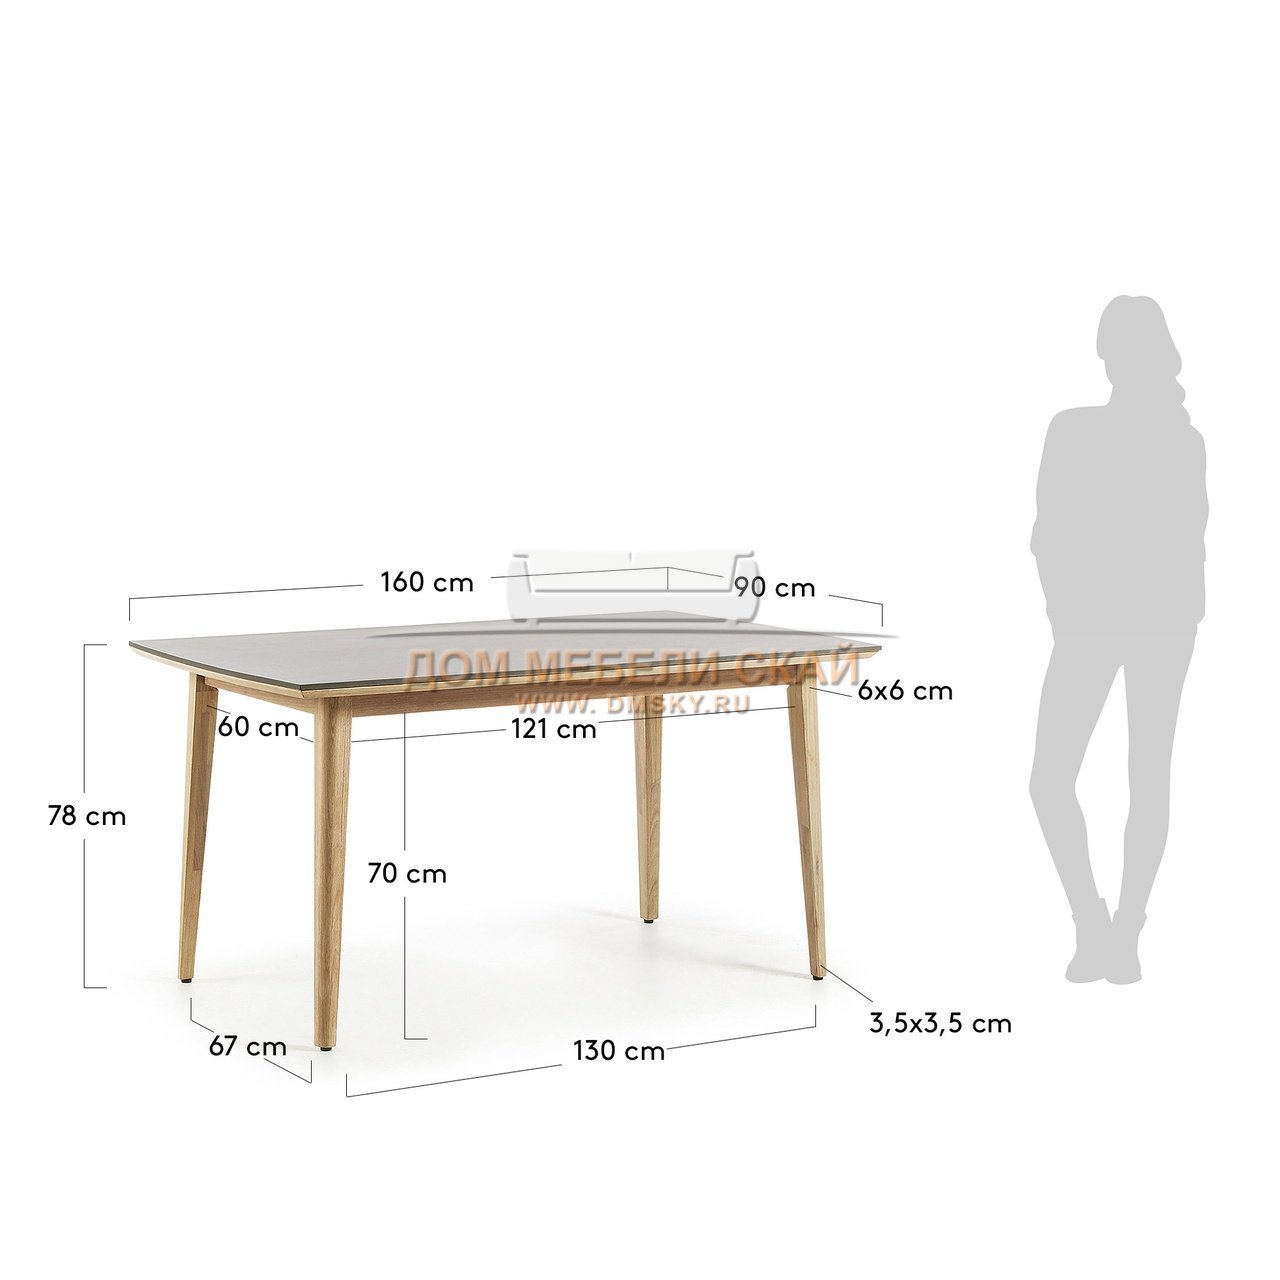 Стол высотой 90 см. Высота обеденного стола стандарт. Столик высота 70 см. Стандартная высота обеденного стола. Оптимальная высота обеденного стола.